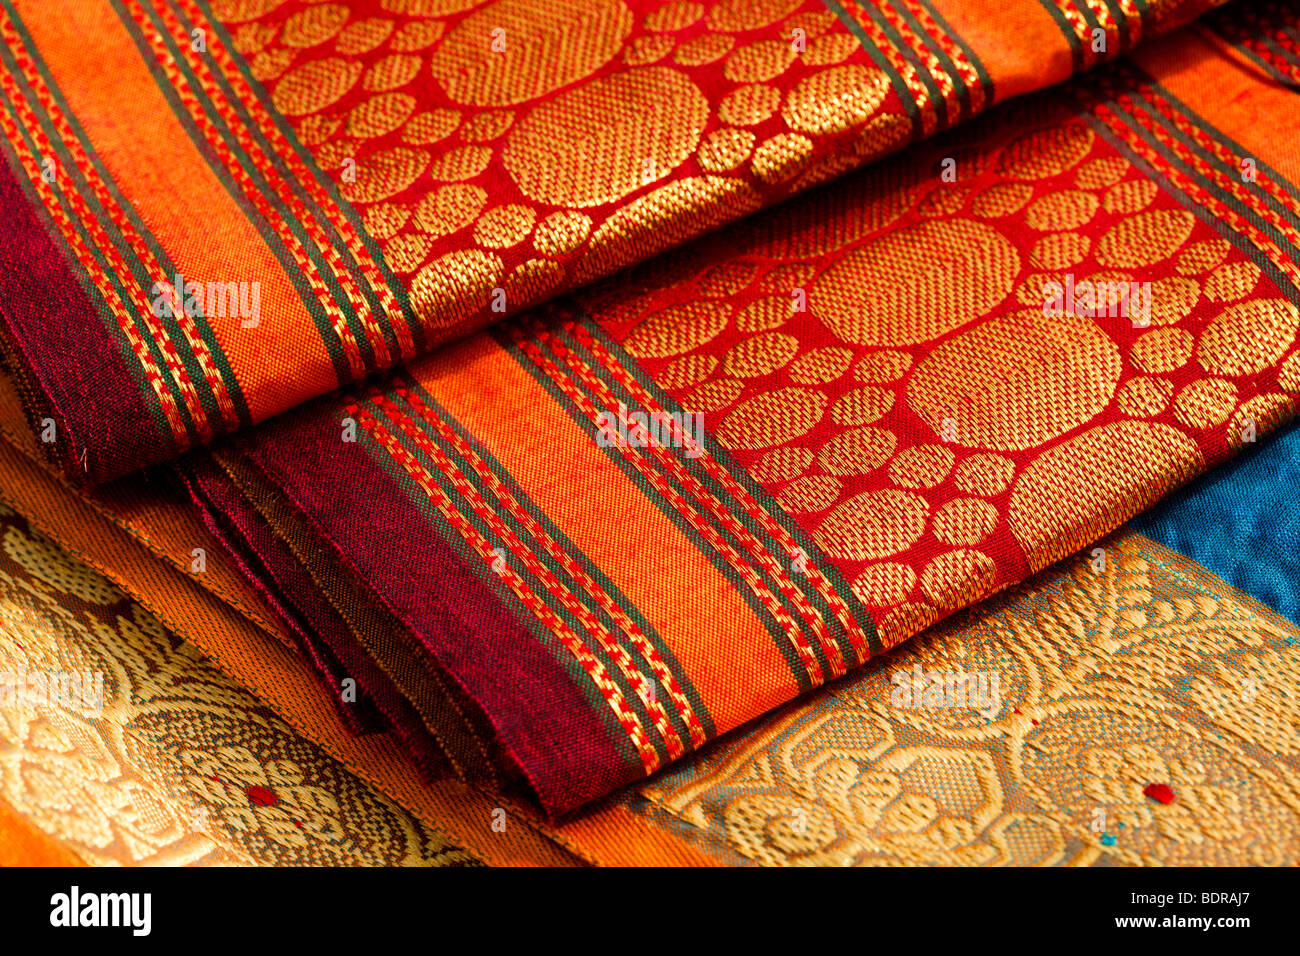 Indian silk saris close up. Background Stock Photo - Alamy